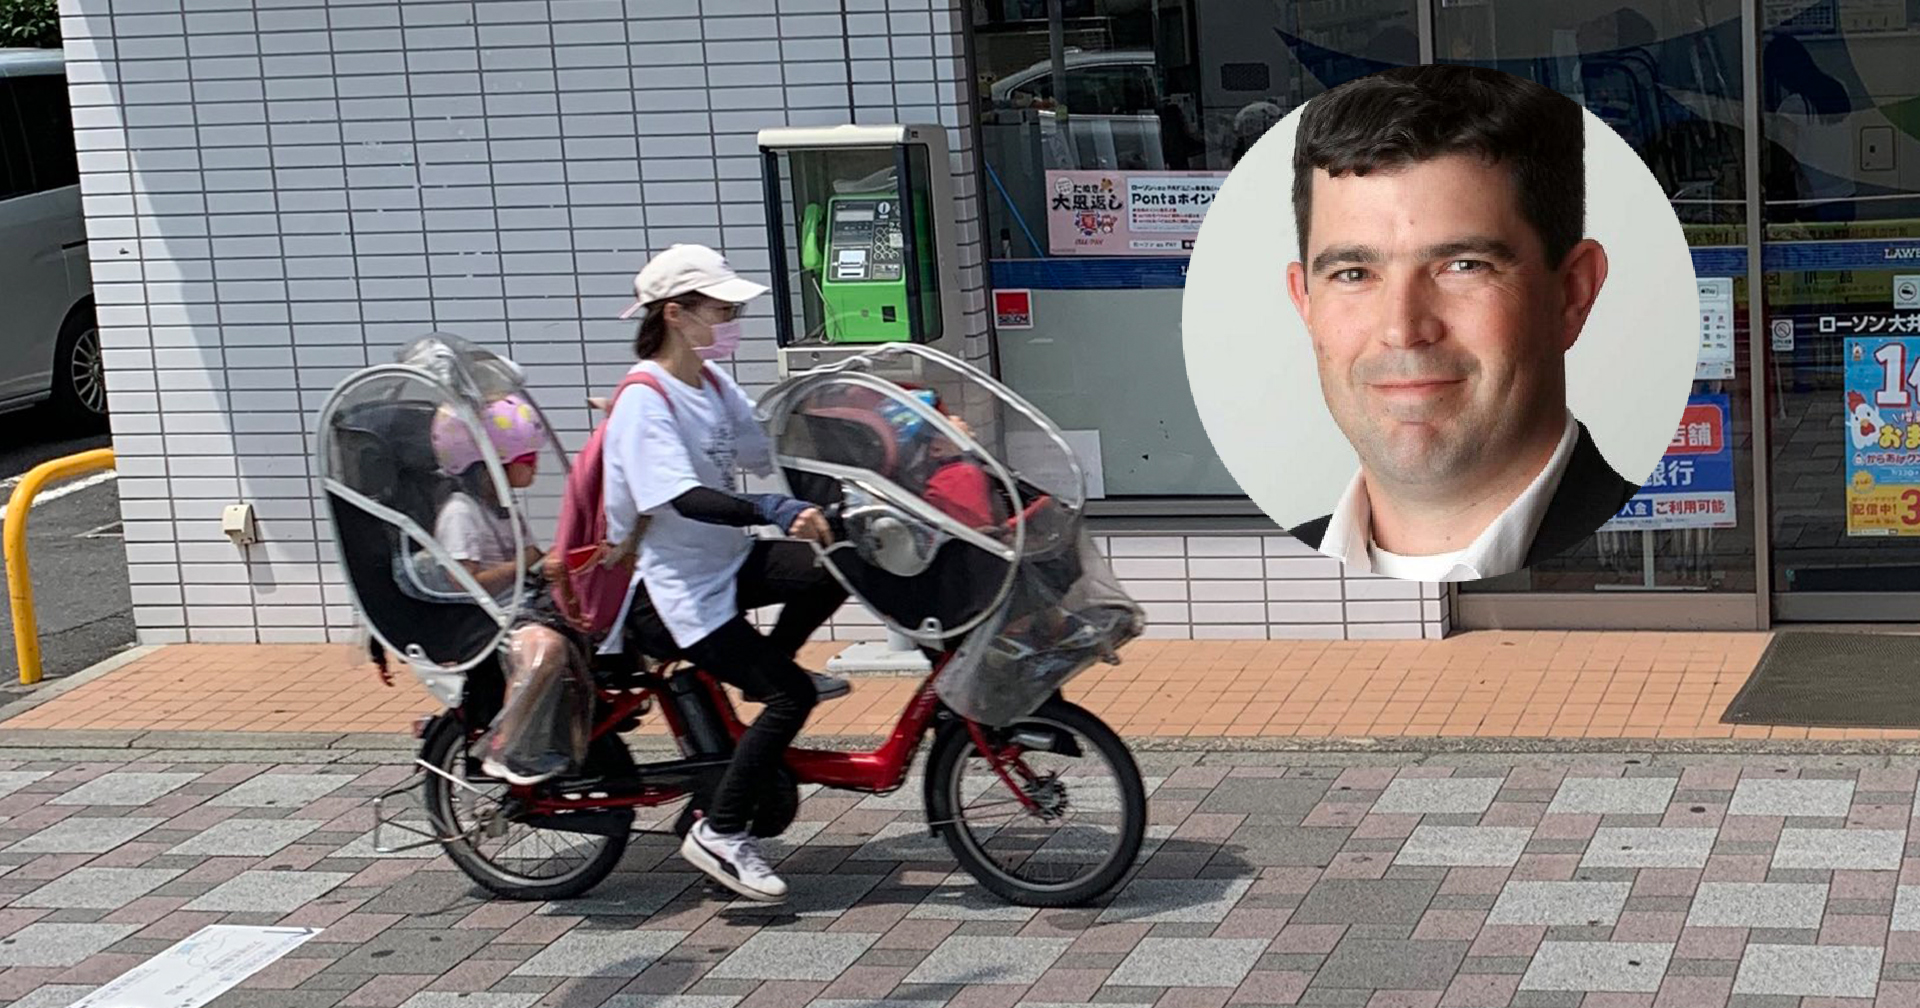 นักข่าวต่างประเทศตกใจ! มาทำข่าวโอลิมปิกเจอจักรยานแม่บ้านญี่ปุ่นทำได้มากกว่าที่คิด